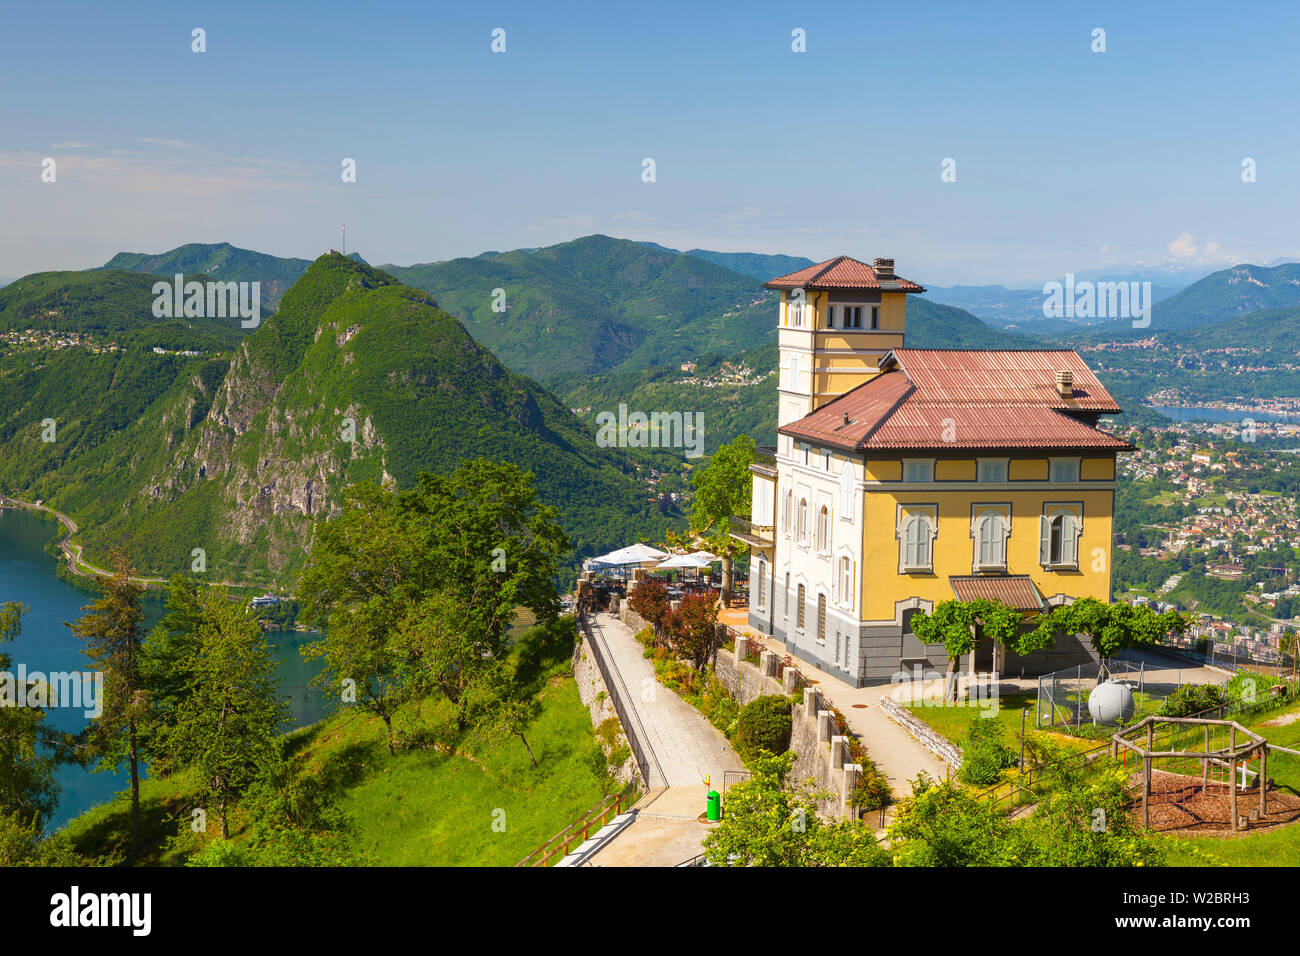 Elevated view over Lugano from Monte Bre, Lugano, Lake Lugano, Ticino, Switzerland Stock Photo